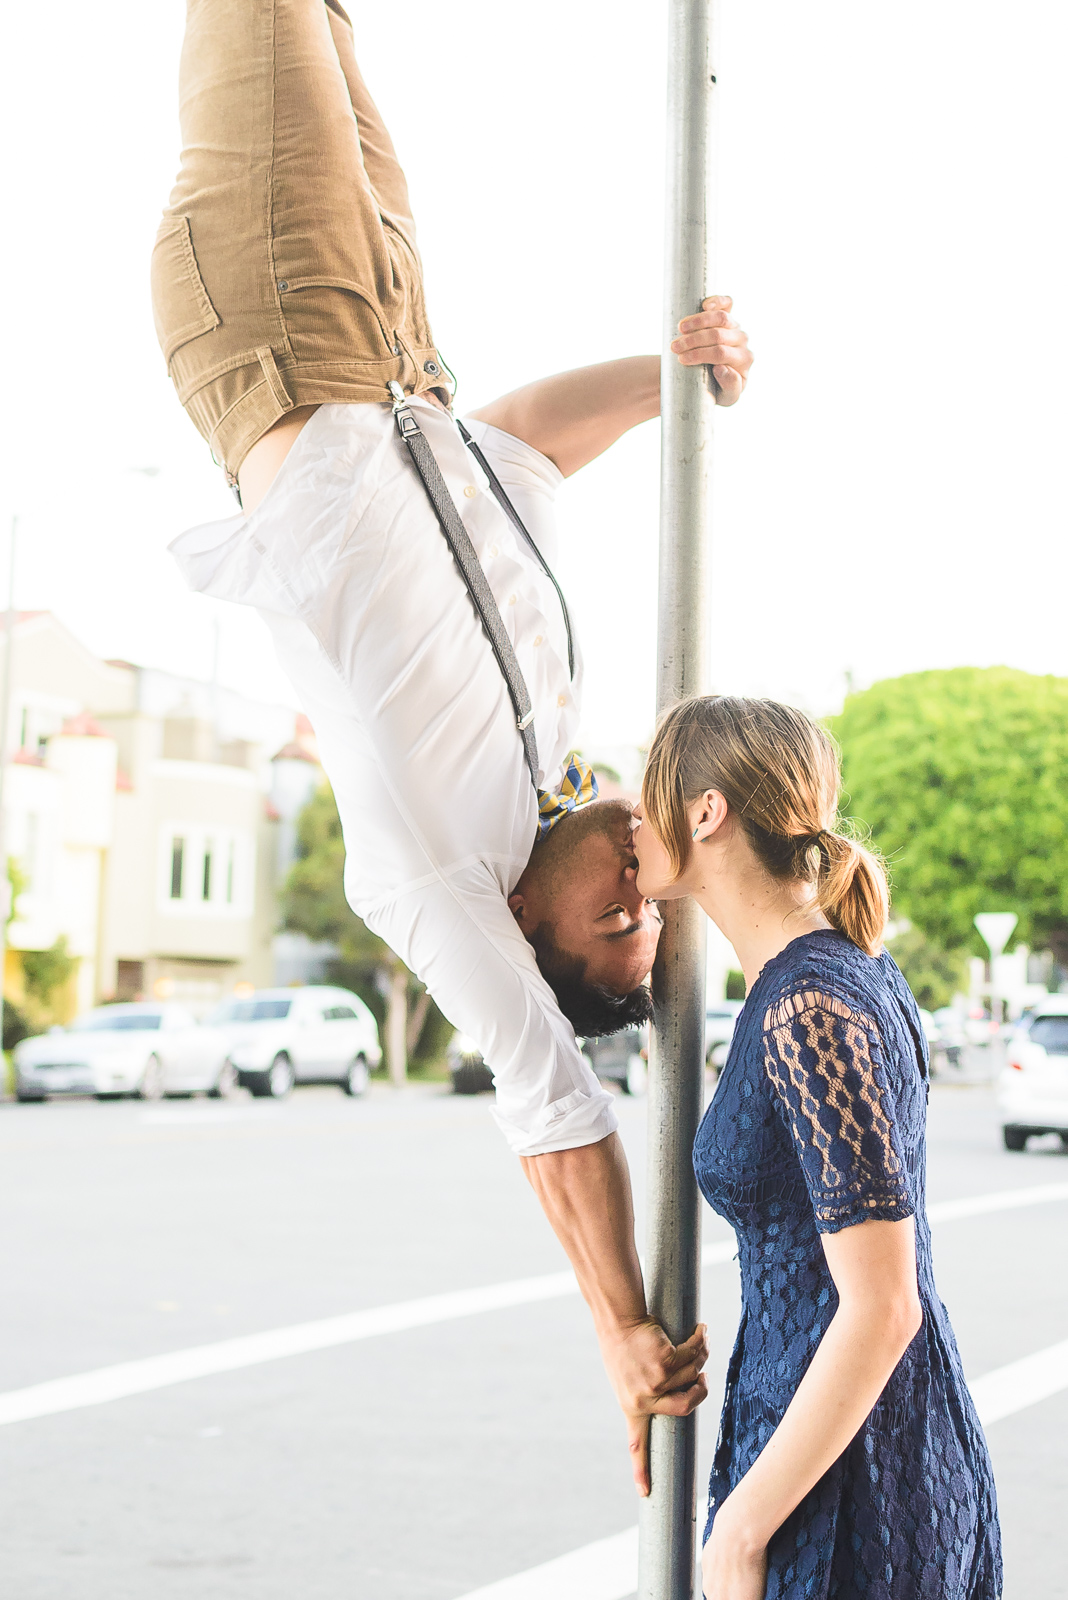 Upside down pole kiss